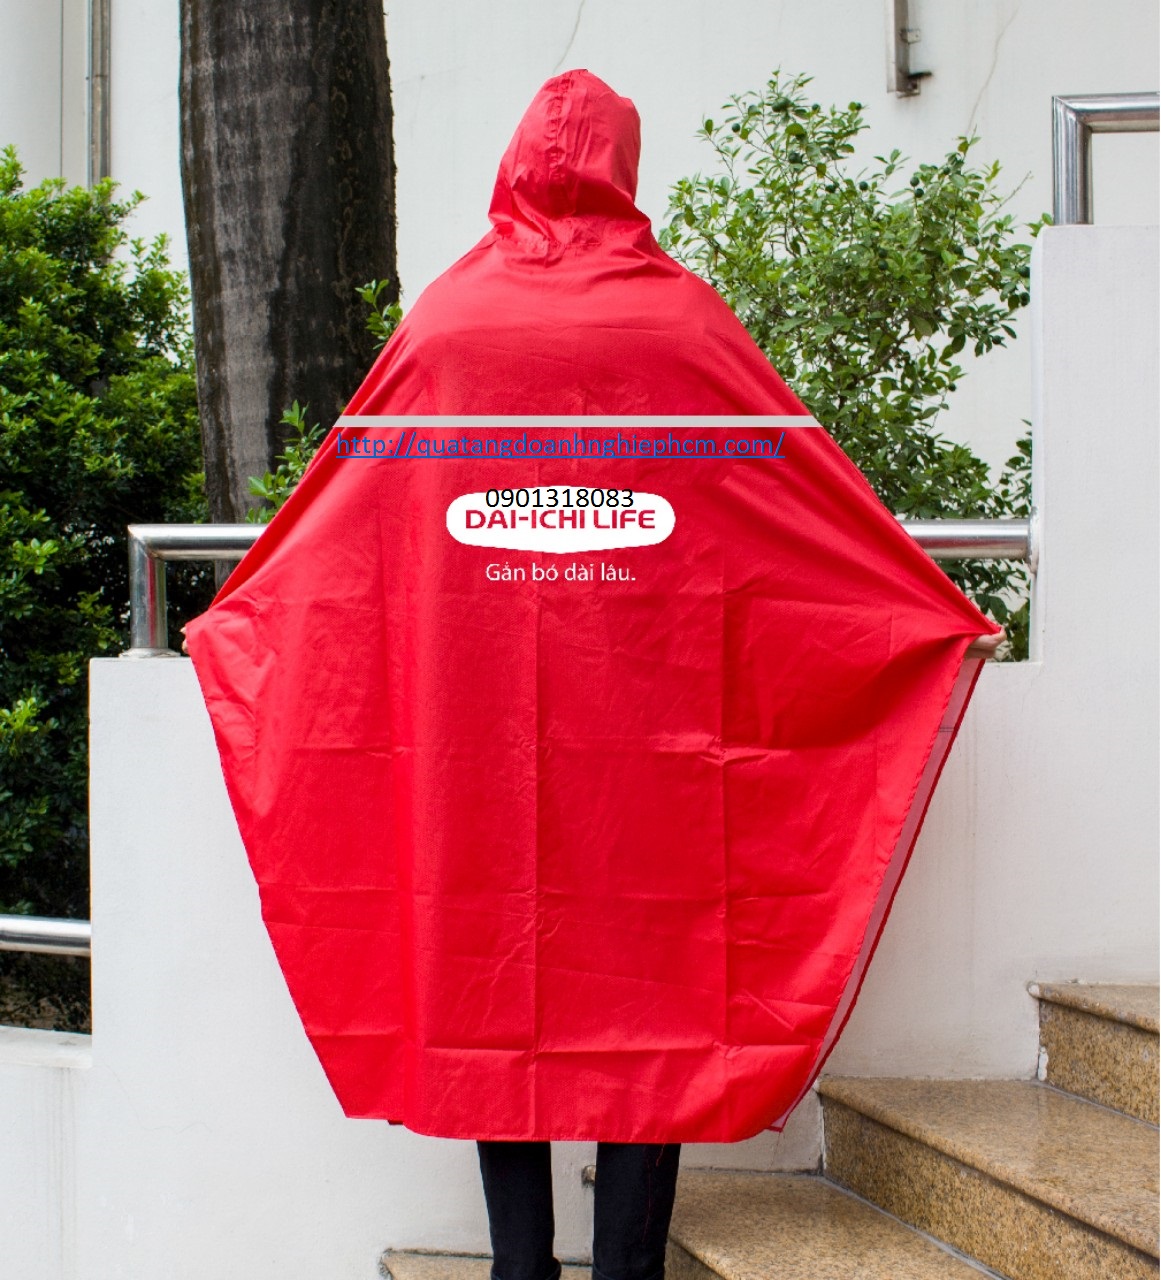 công ty sản xuất áo mưa quà tặng kiểu áo mưa chử A in logo dai-ichi life